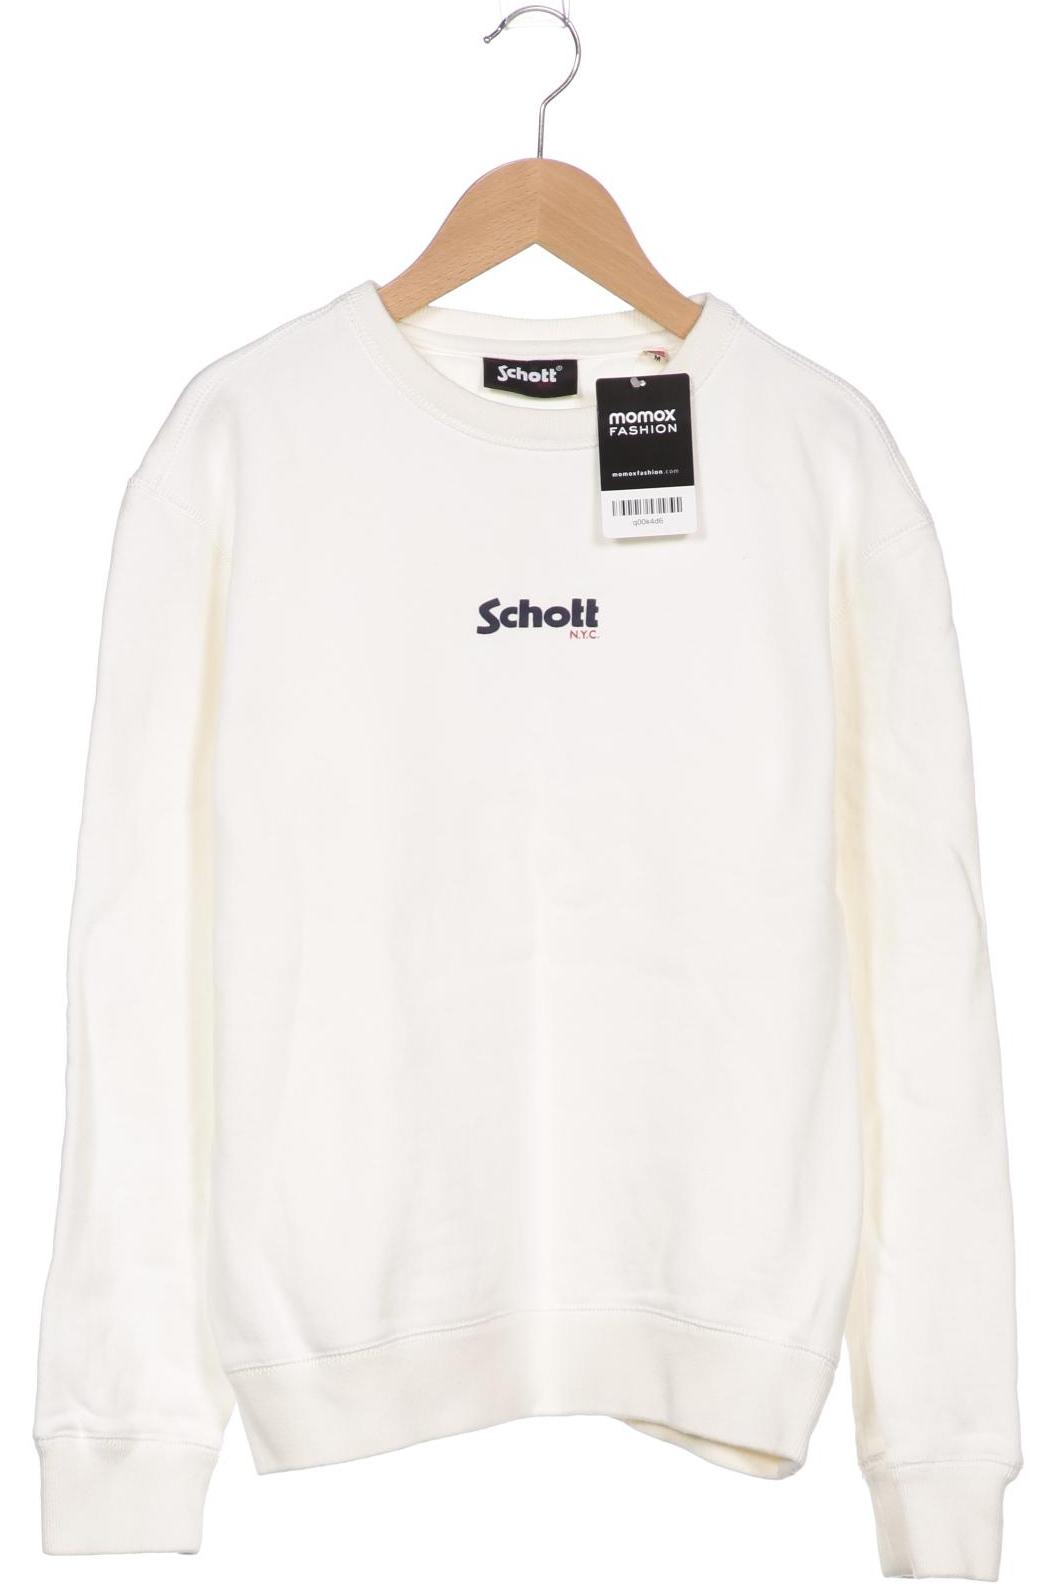 Schott NYC Damen Sweatshirt, weiß, Gr. 38 von Schott NYC